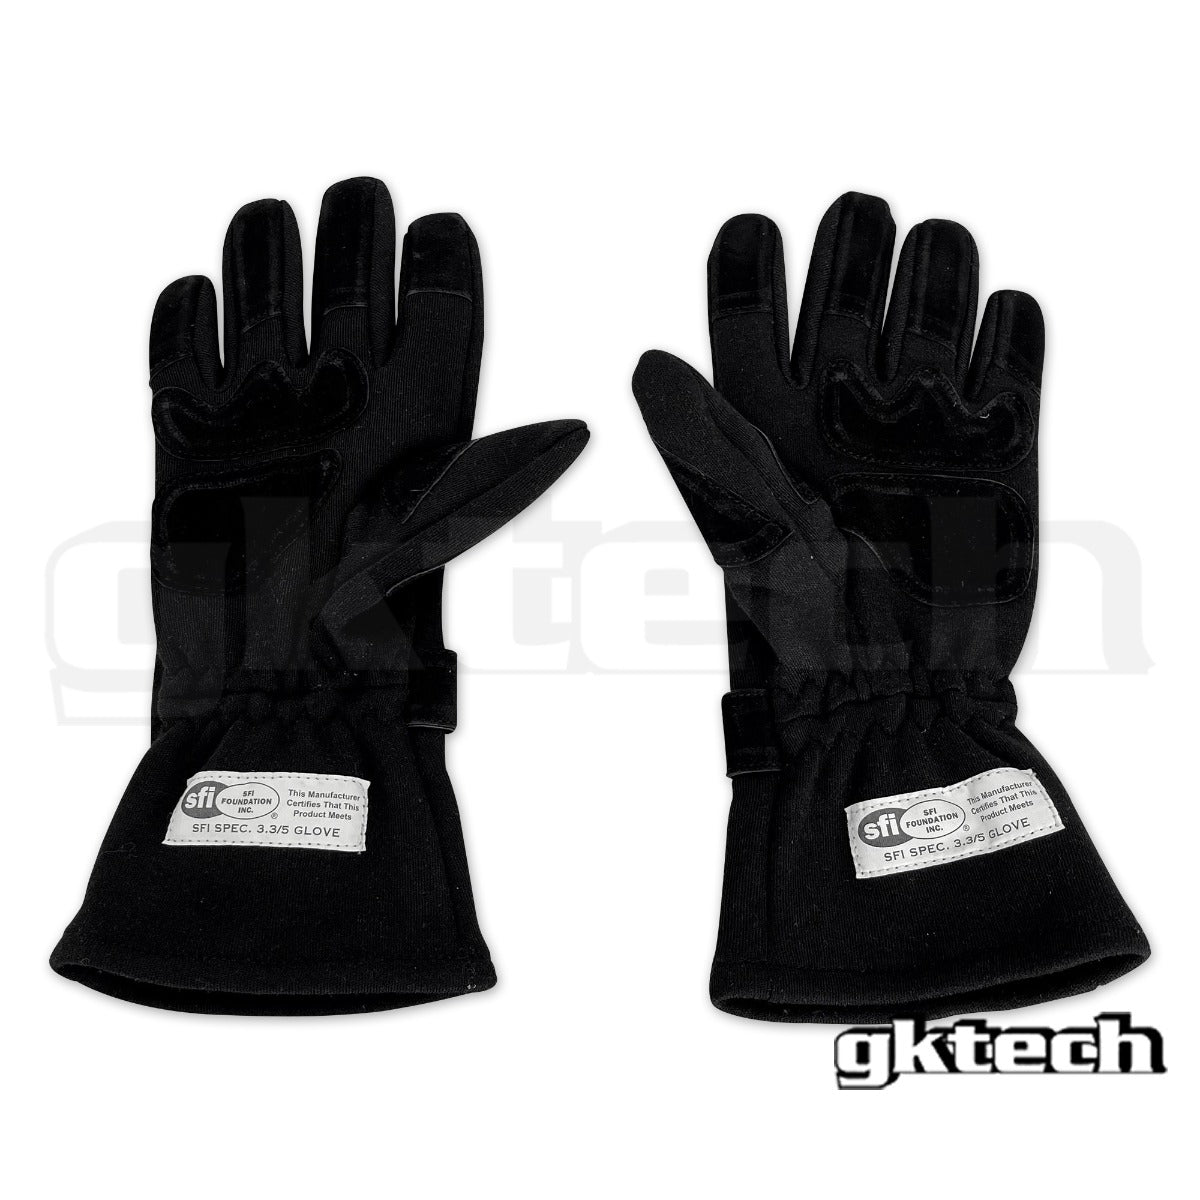 GKtech Racing gloves